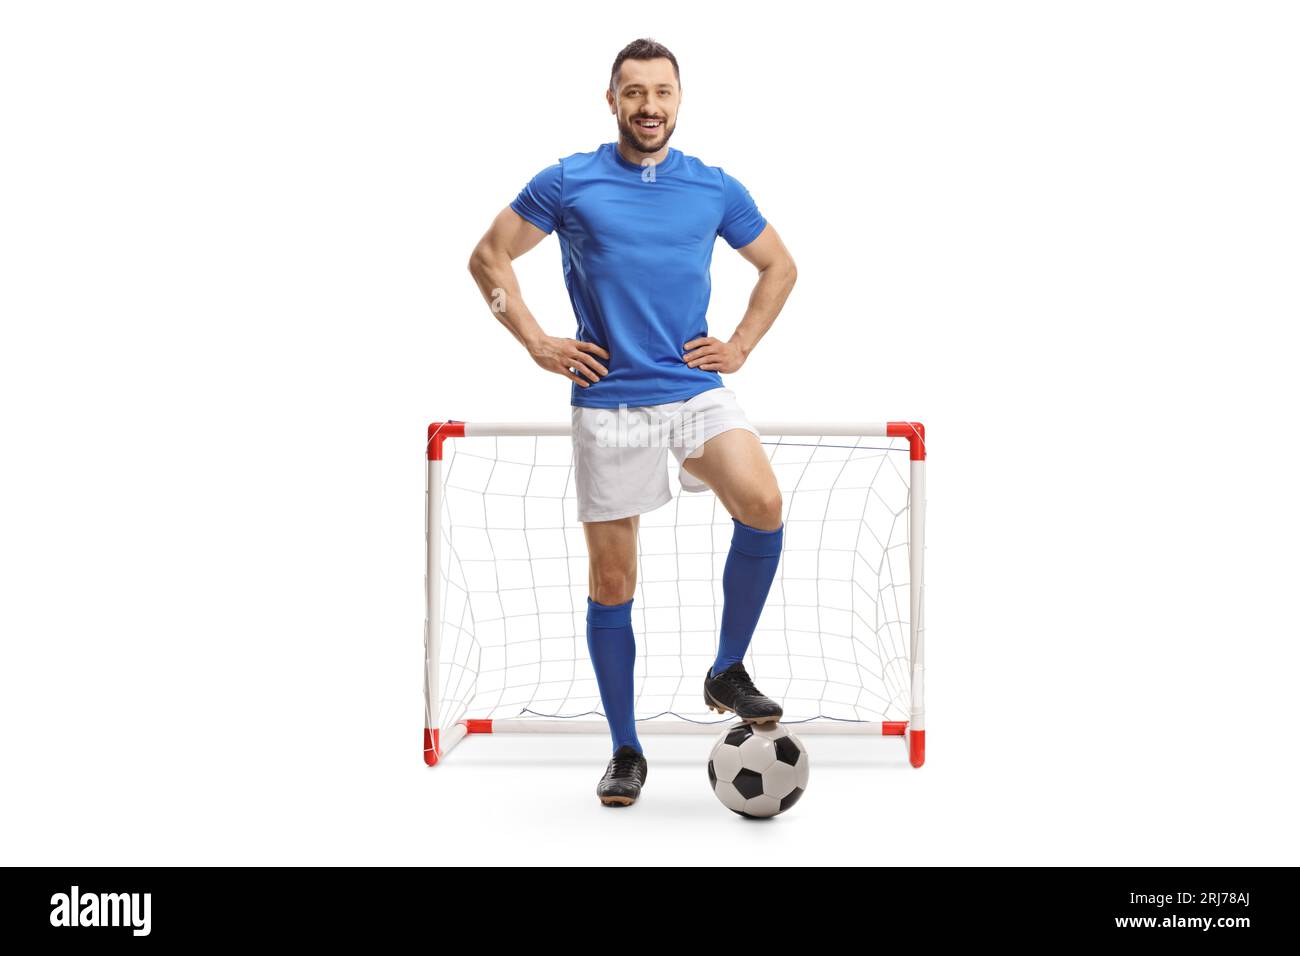 Porträt eines Fußballspielers in voller Länge, der mit einem Ball vor einem Minitor auf weißem Hintergrund posiert Stockfoto